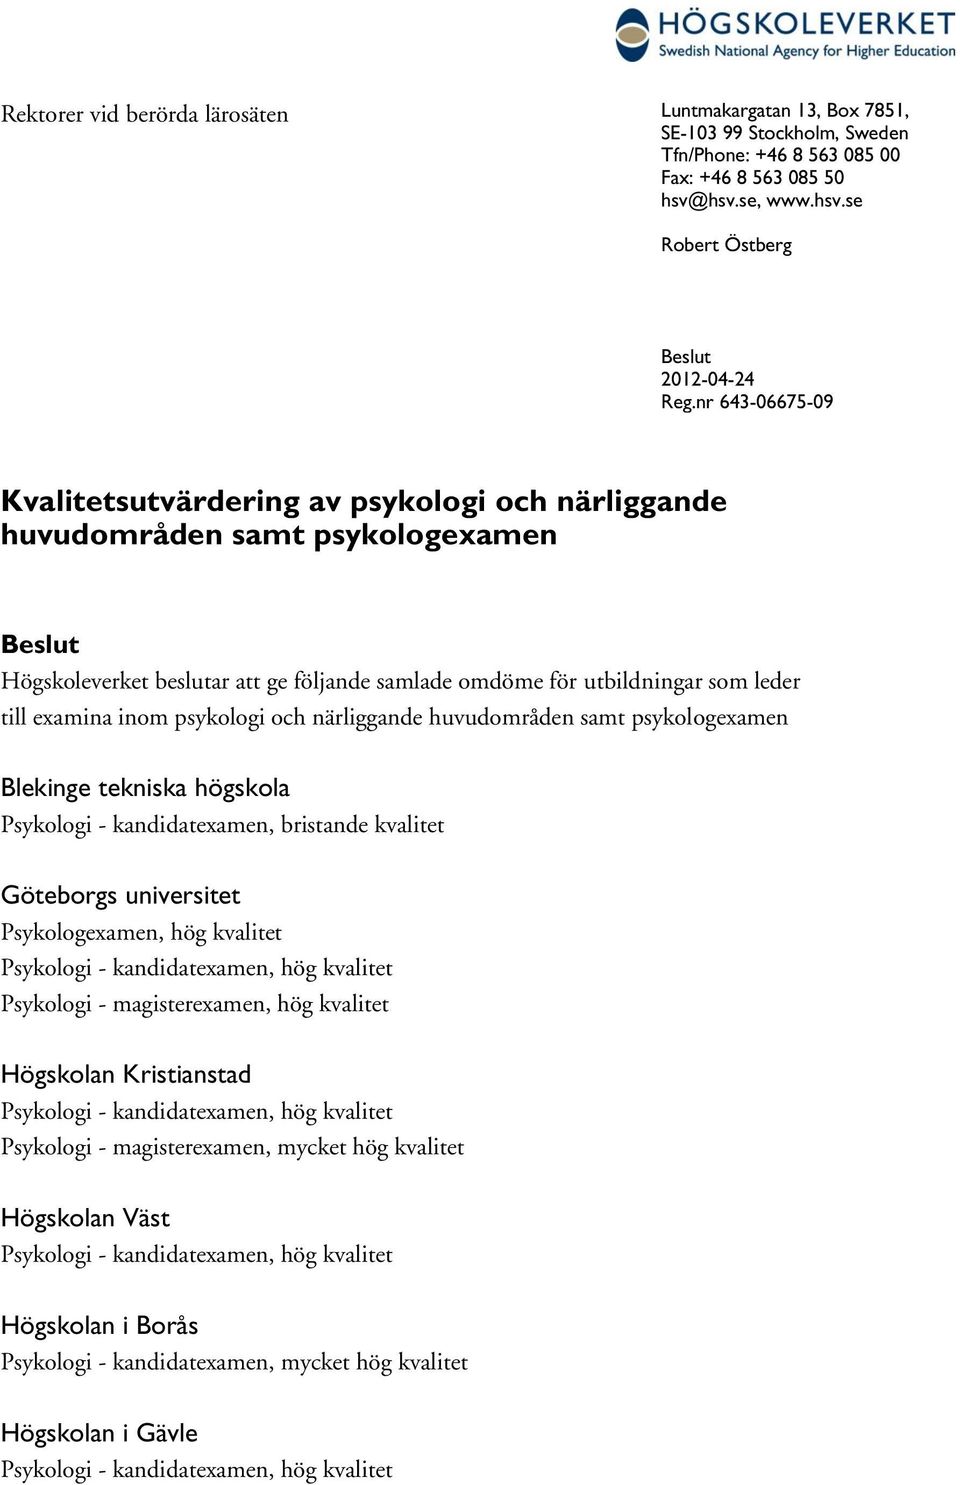 examina psykologi och närliggande huvudområden samt psykologexamen Blekinge tekniska högskola Psykologi - kandidatexamen, bristande kvalitet Göteborgs universitet Psykologexamen, hög kvalitet